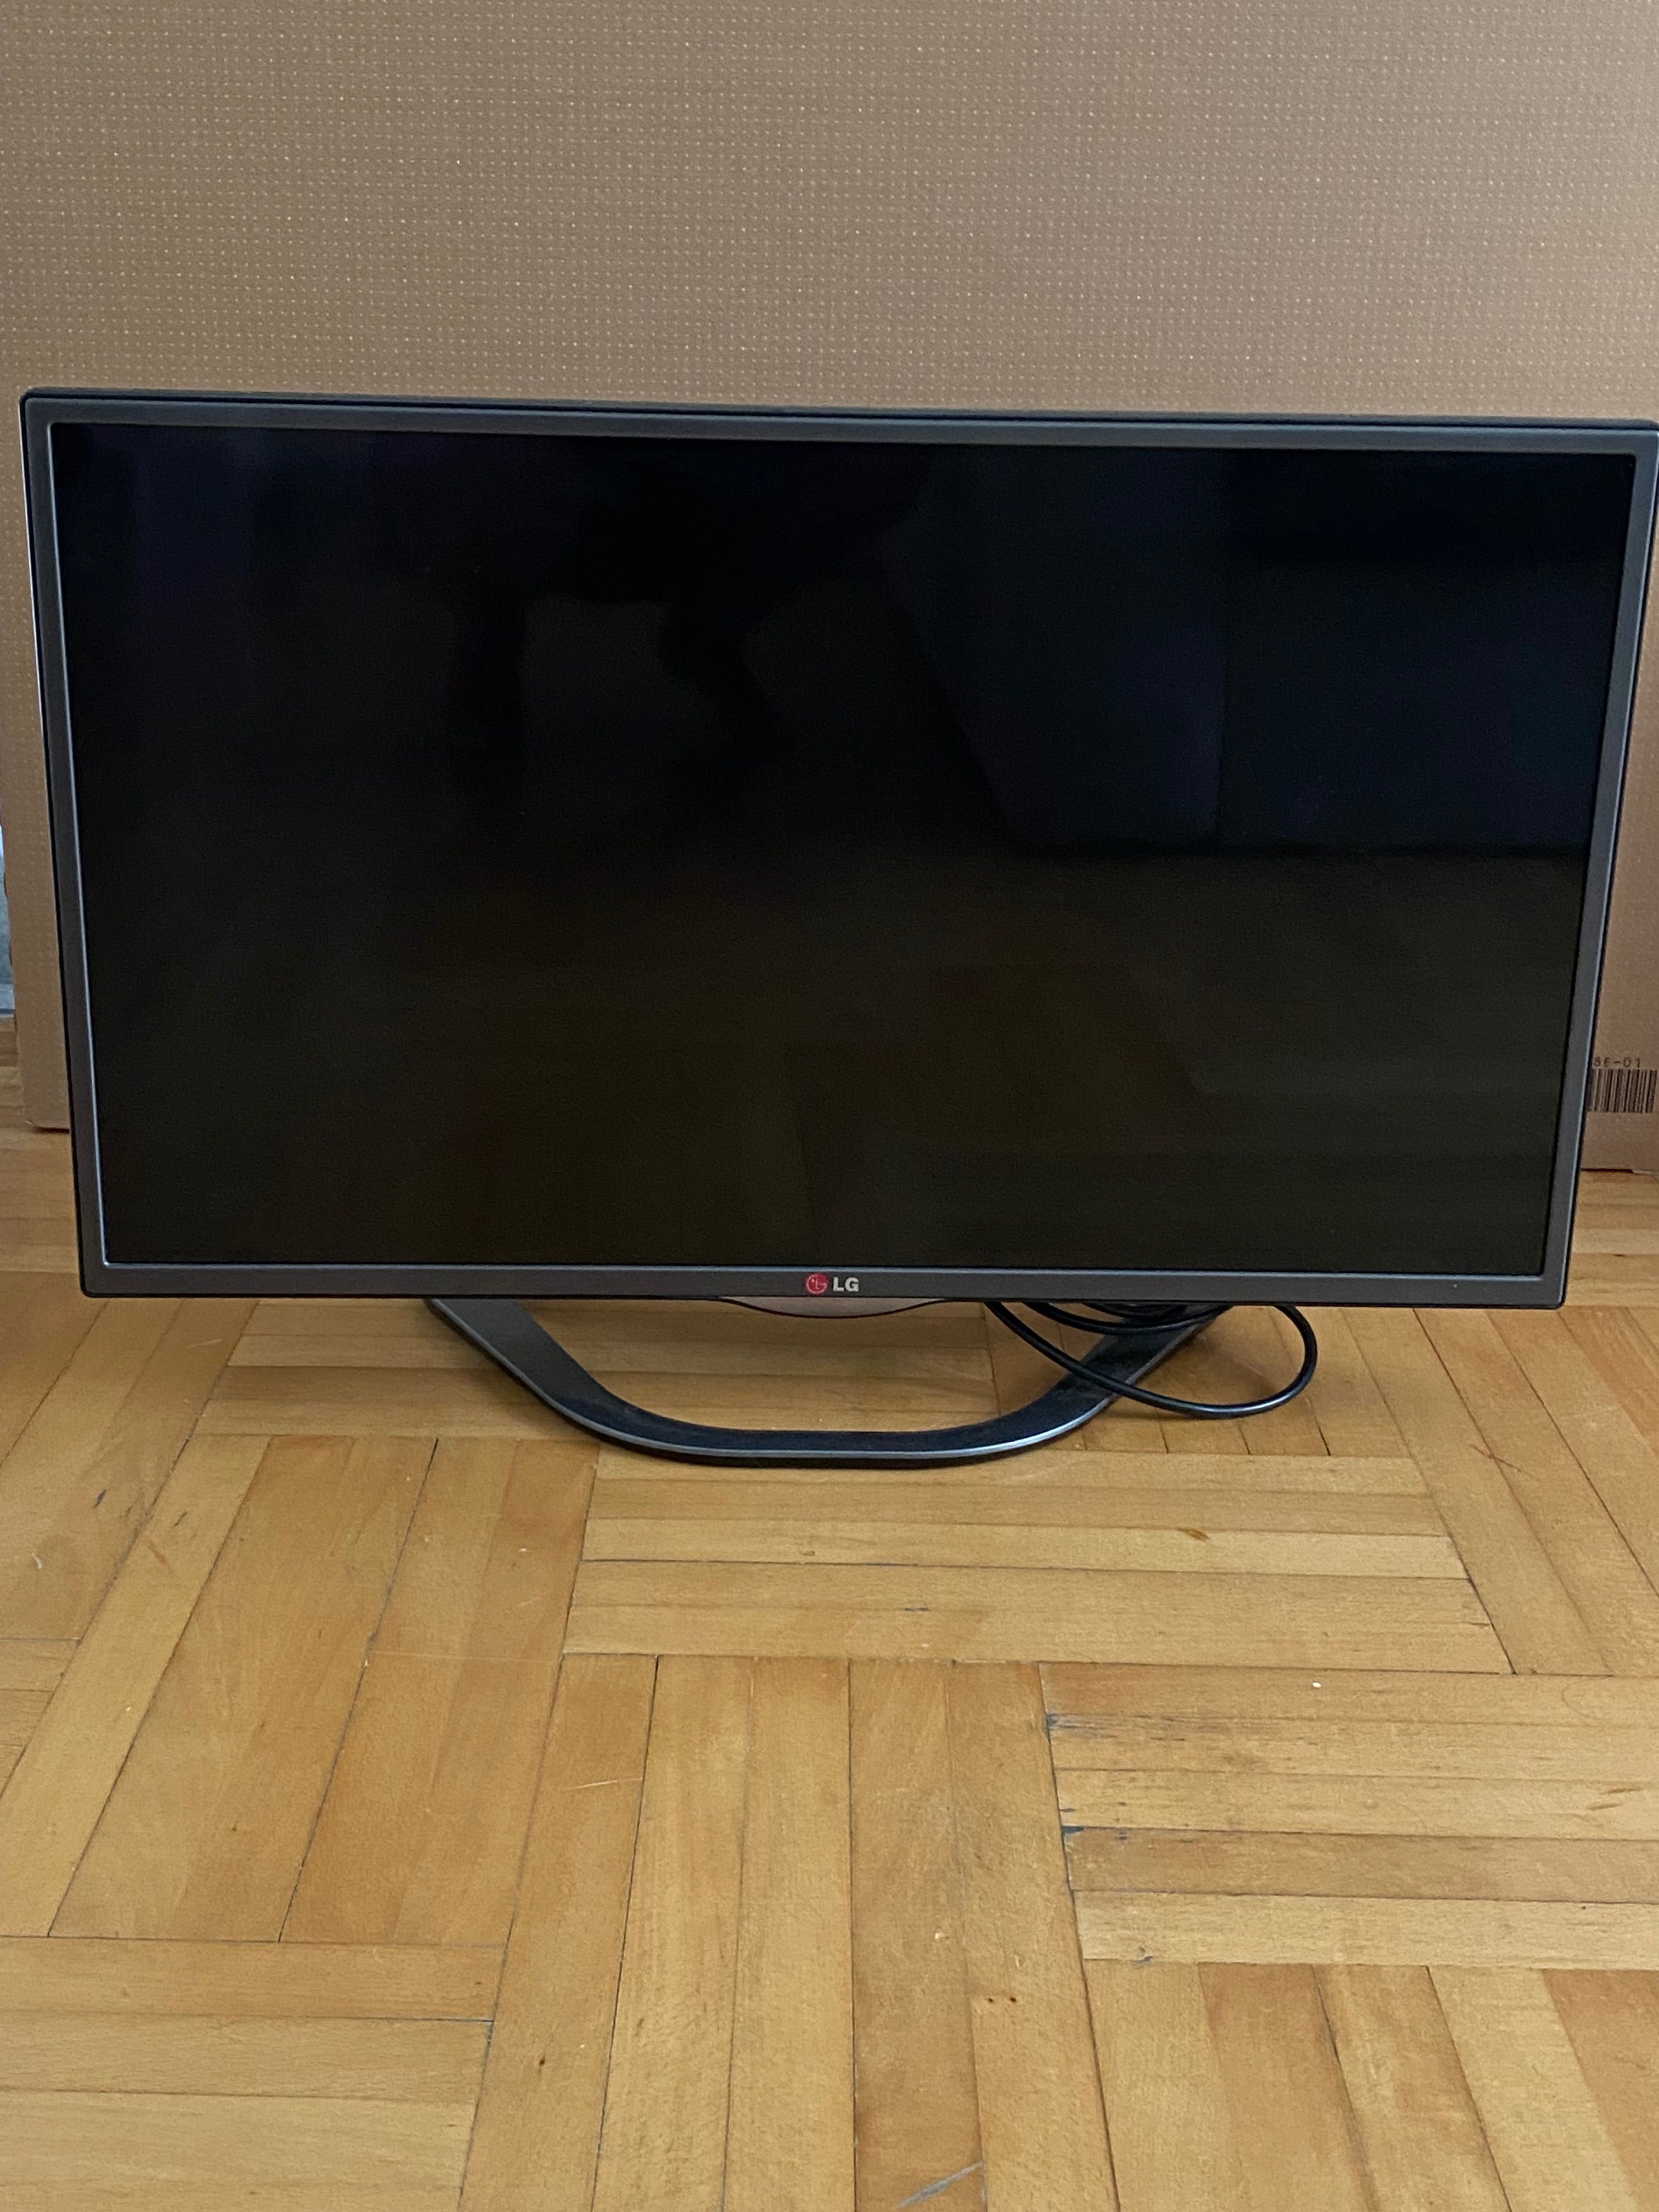 Smart TV Televizor LG 32LA620S LED 81cm Full HD 3D plus Magic remote